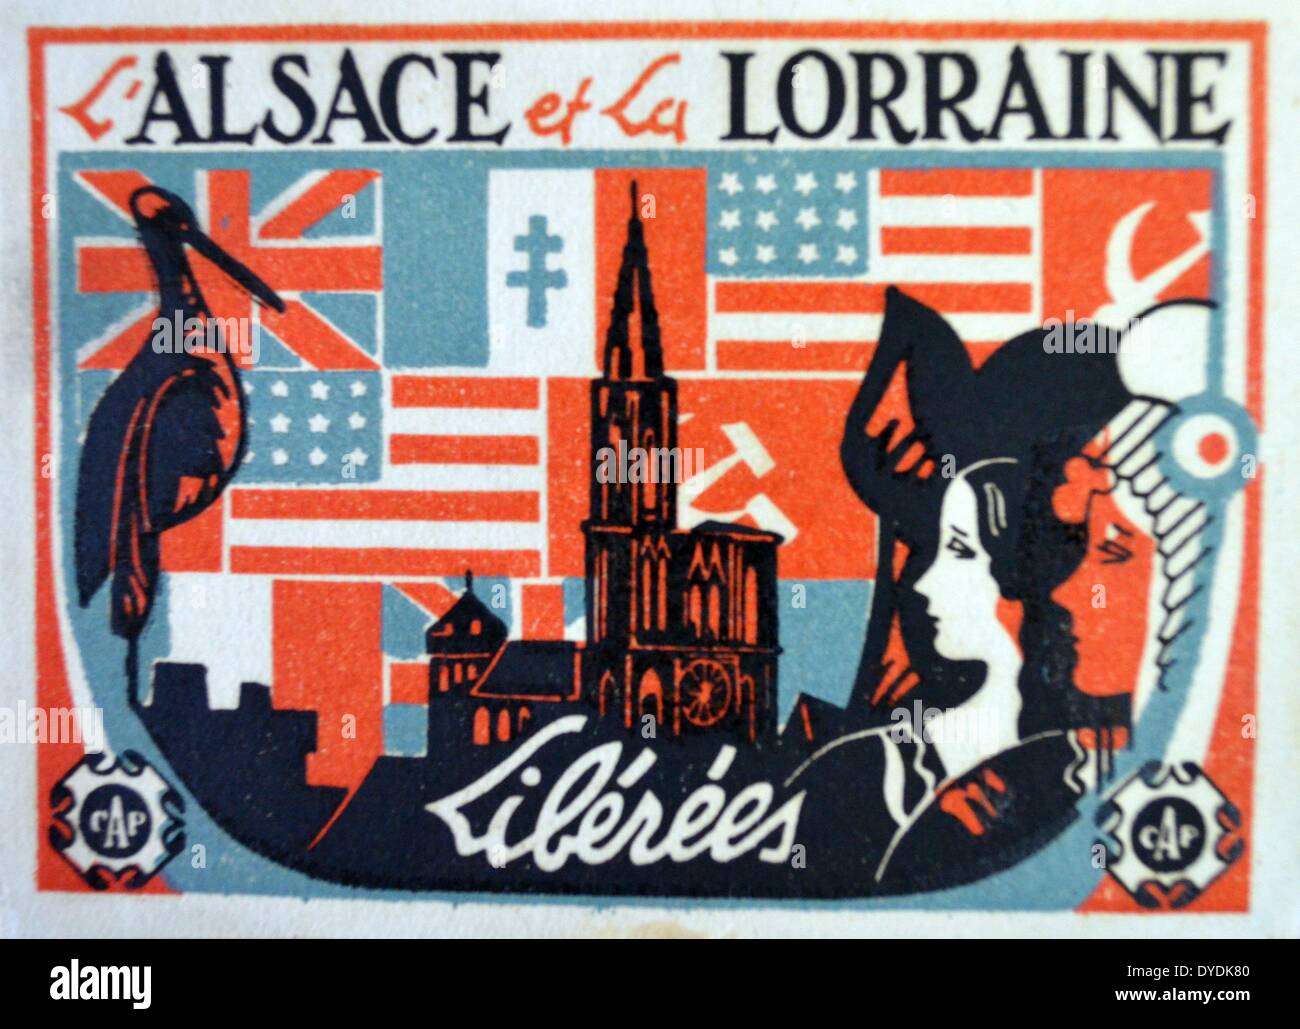 Carte postale commémorative annonçant la libération de l'Alsace Lorraine et de l'occupation allemande 1945 Banque D'Images